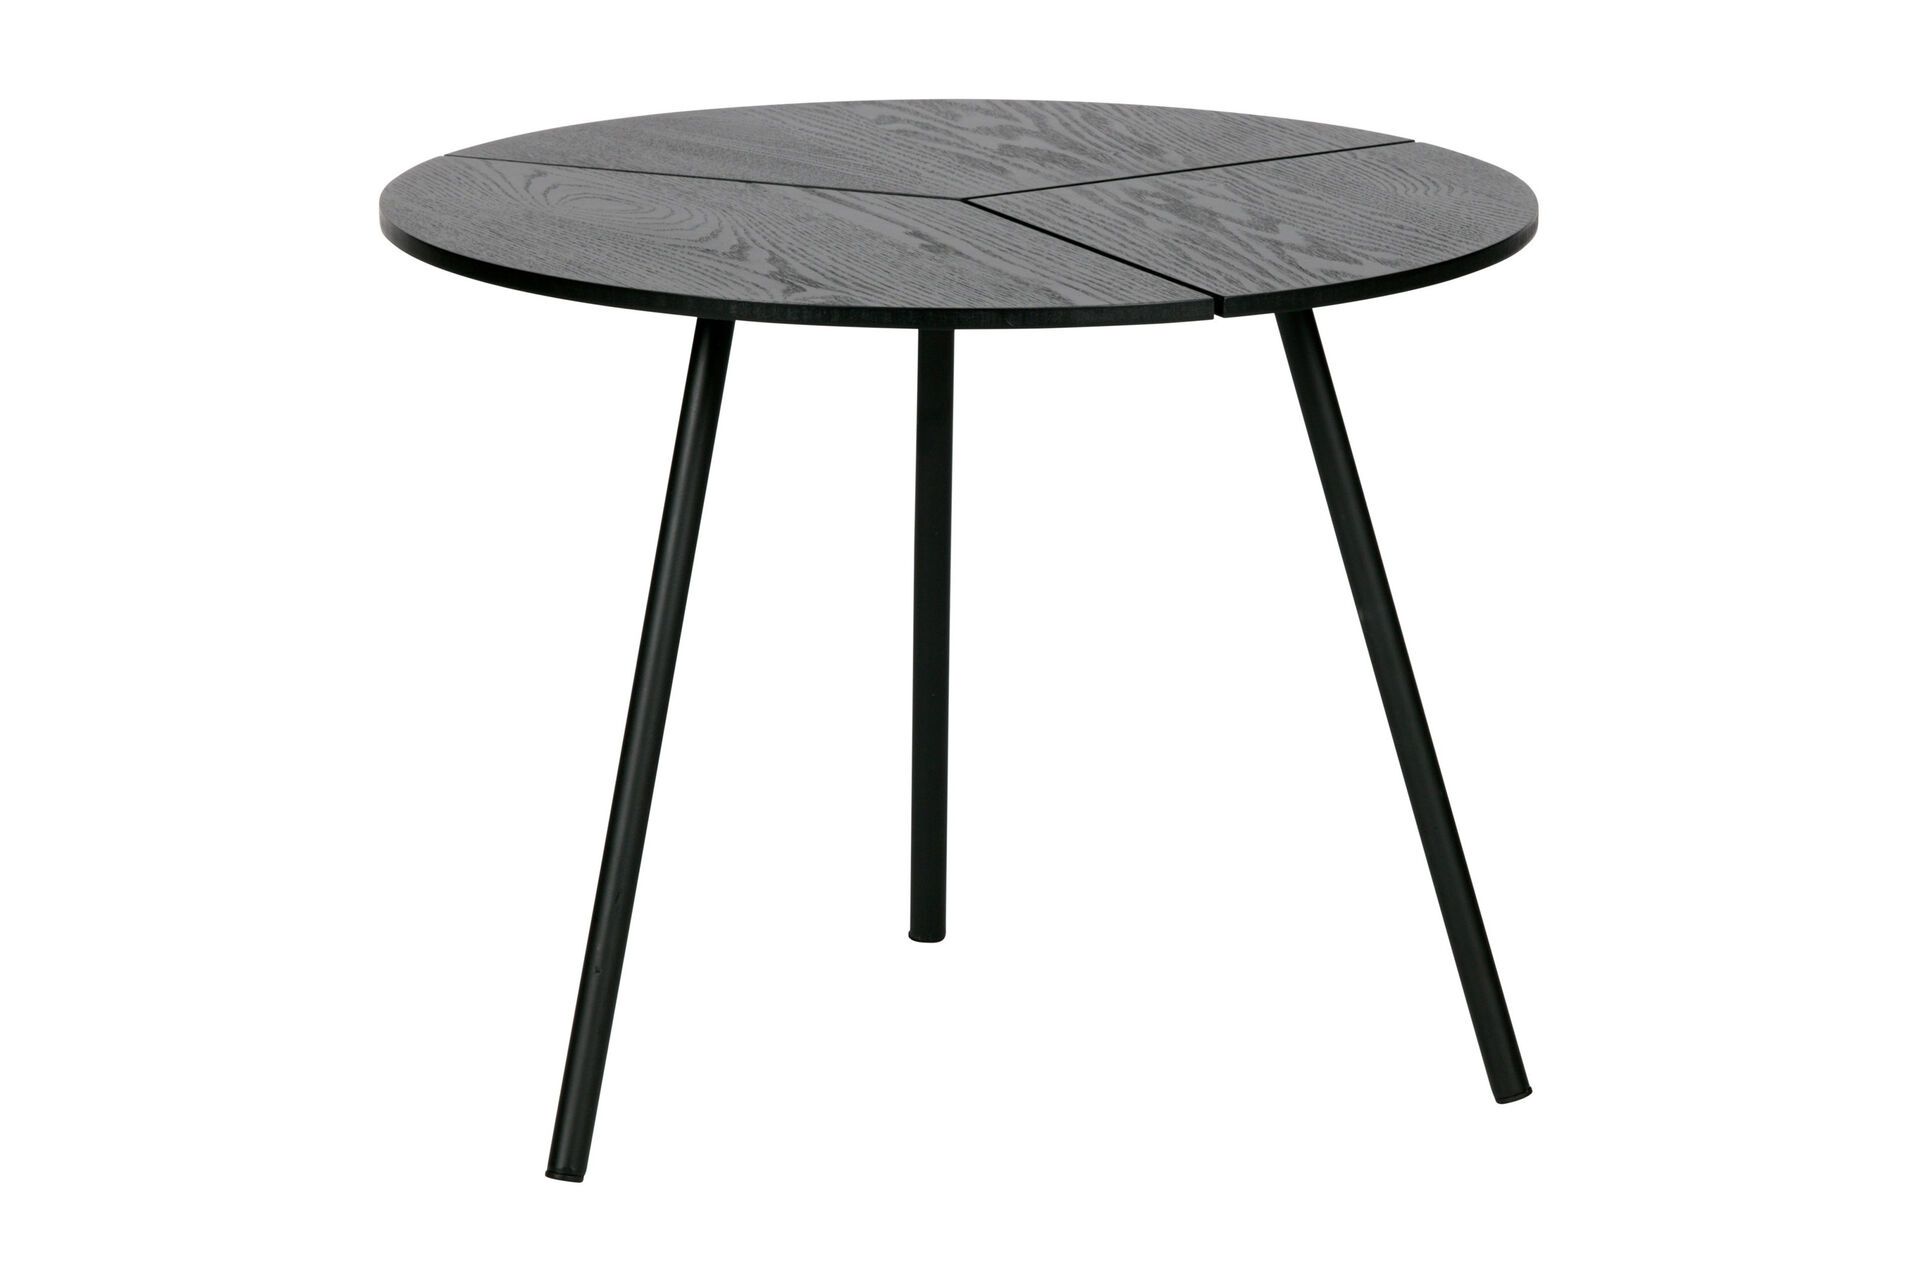 Petite table basse chêne et métal noir 38x48cm